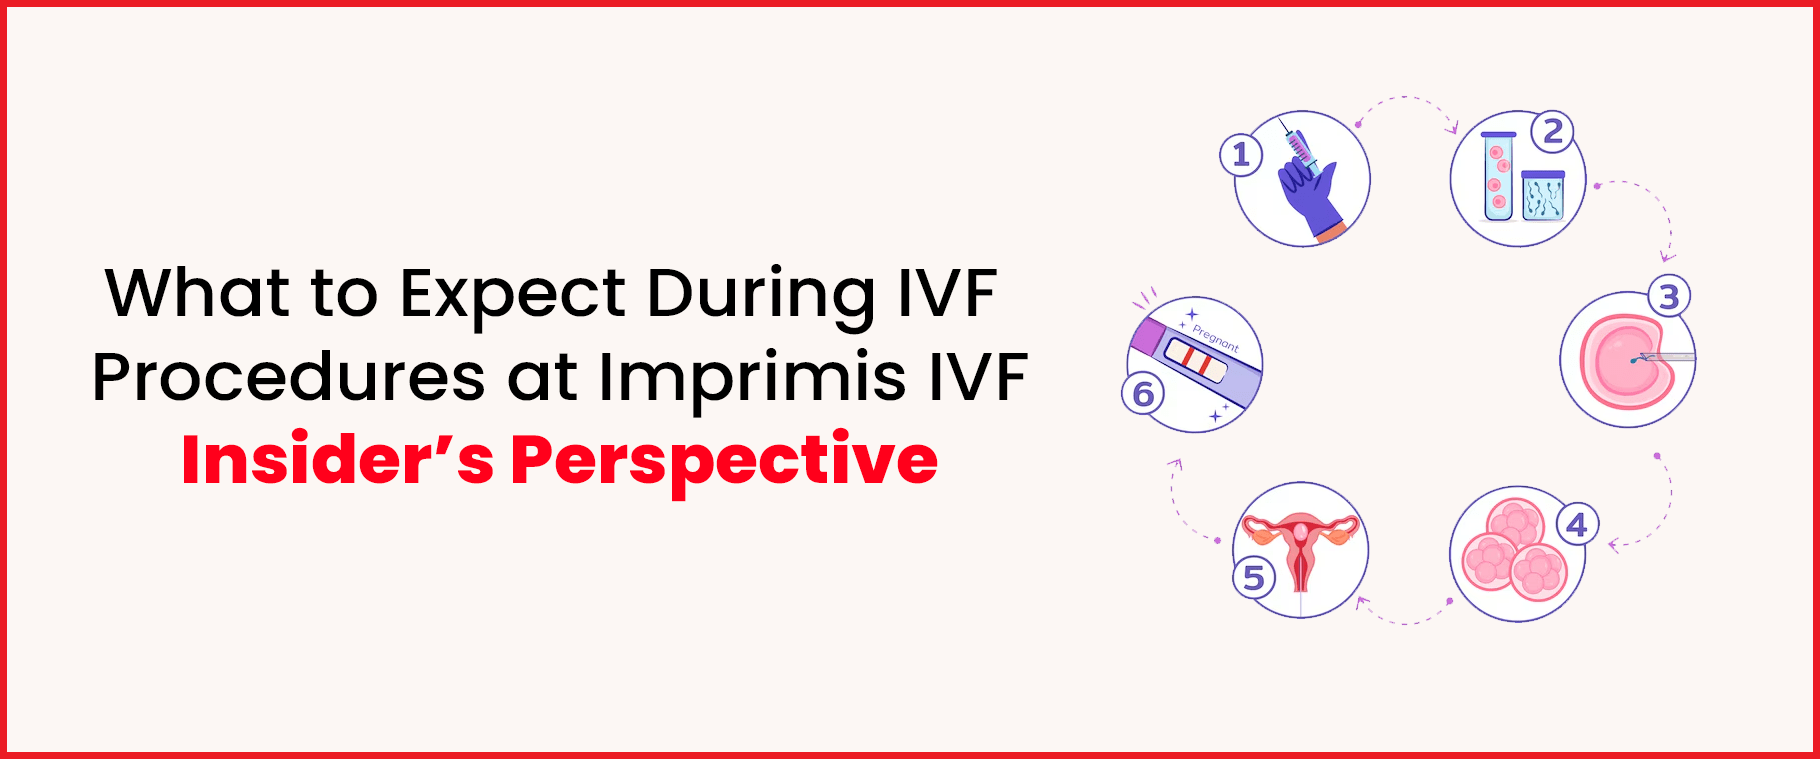 IVF procedures